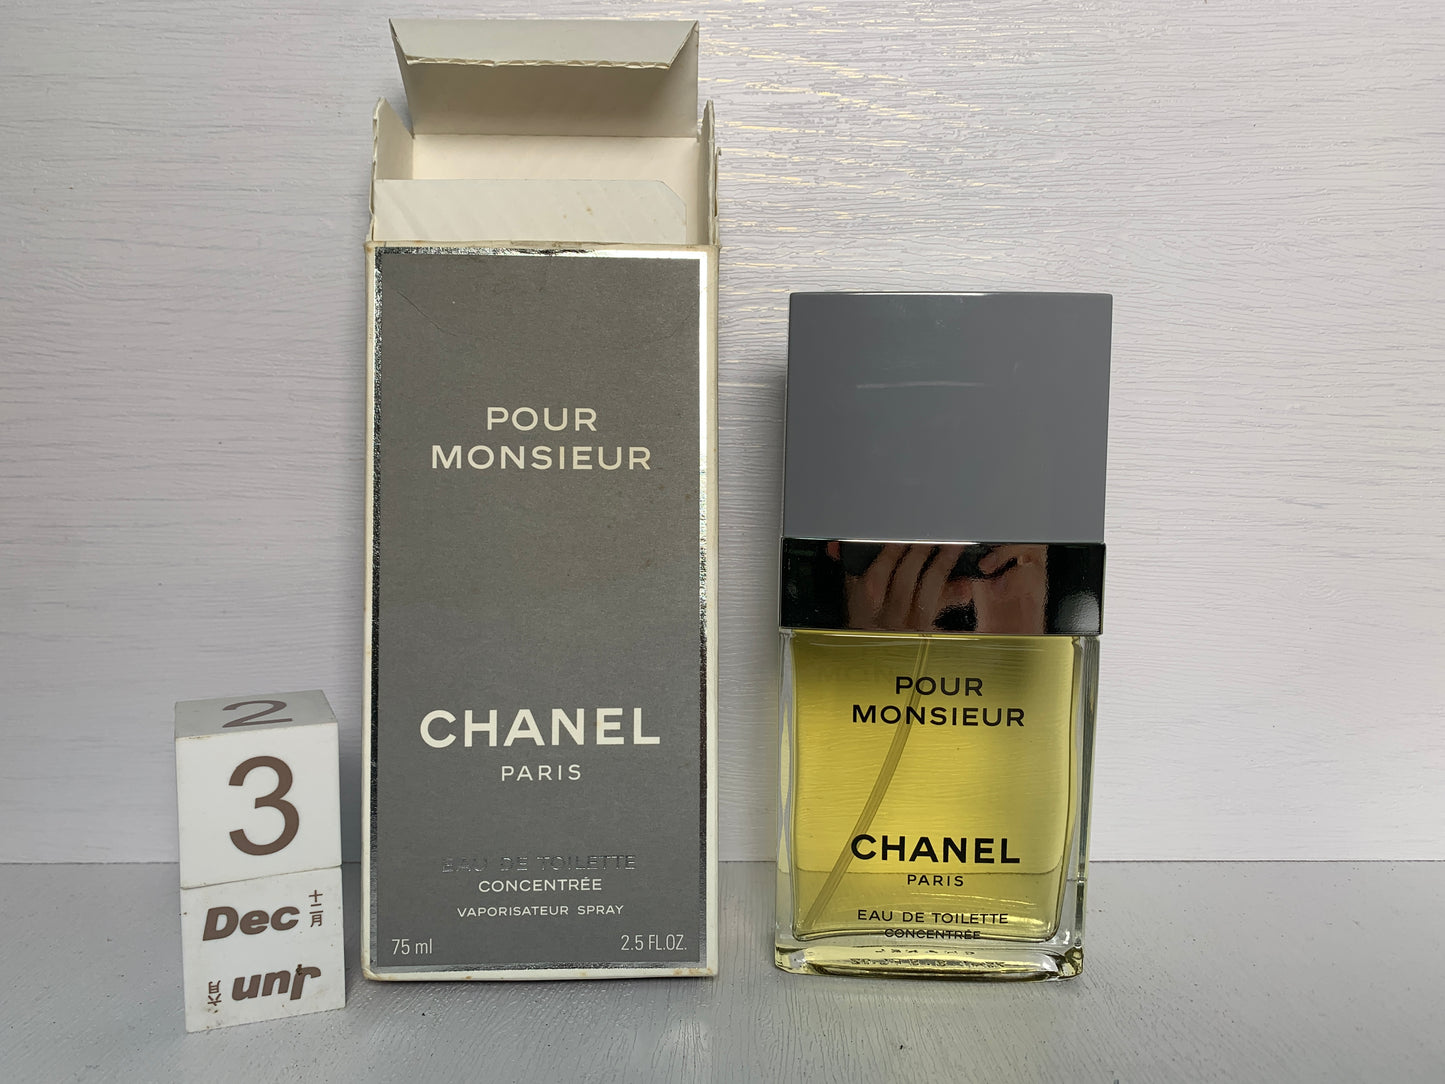 Rare Chanel Pour Monsieur Concentree Eau de toilette EDT 75ml 2.5 oz - 3DEC